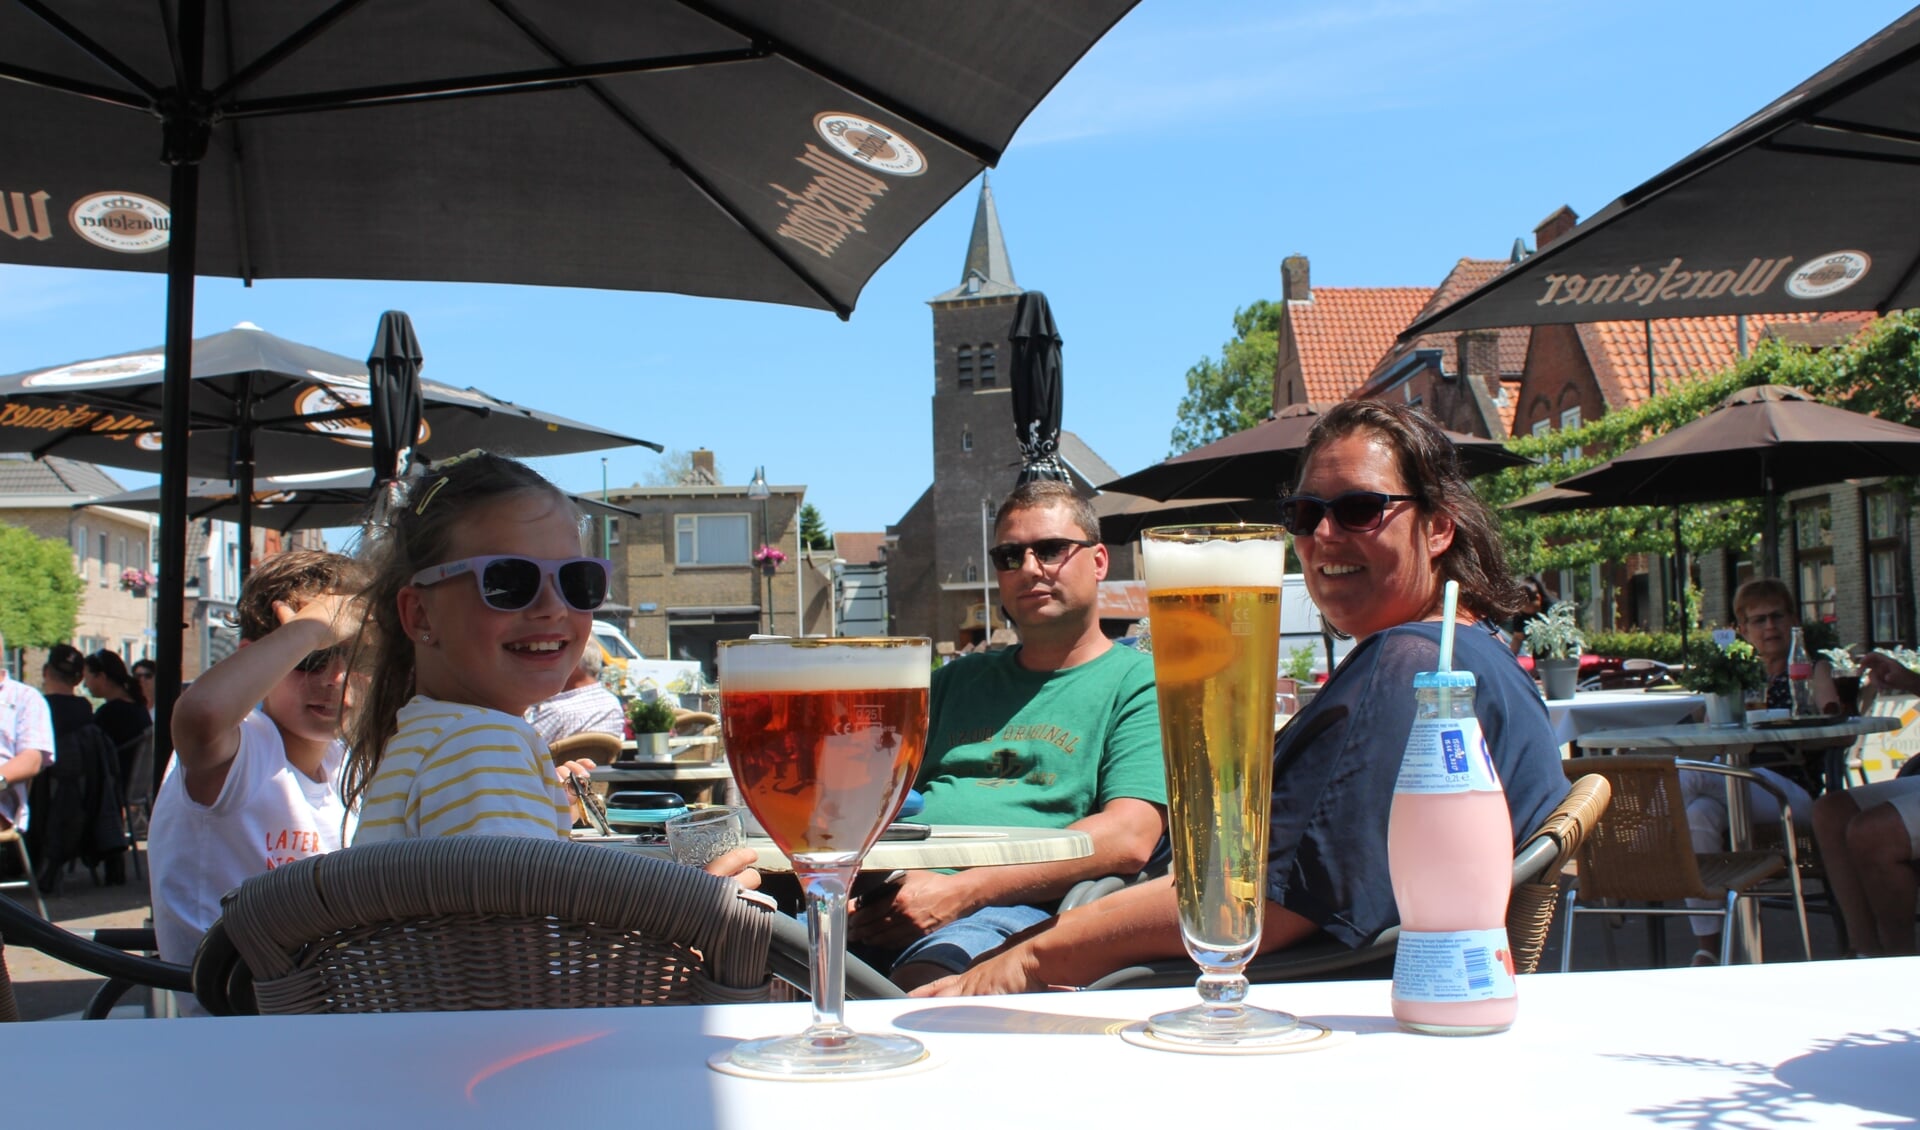 De familie van Eekelen kwam naar Kruisland voor een drankje op het terras. 